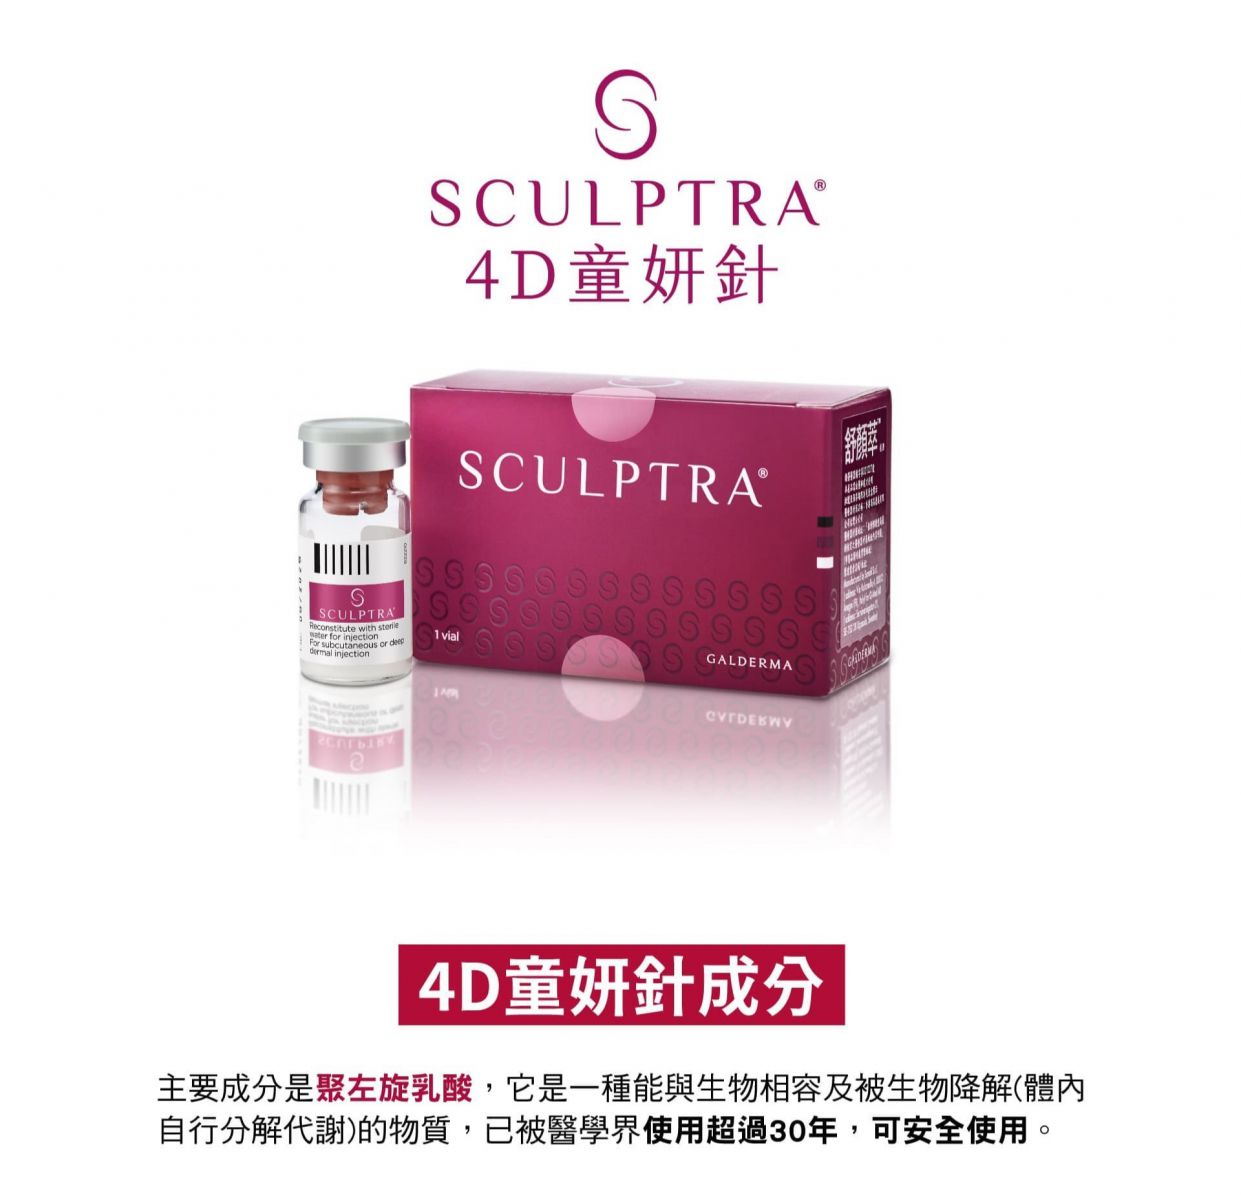 SCULPTRA® 4D童妍針  4D童妍針成分 主要成分是聚左旋乳酸,它是一種能與生物相容及被生物降解(體內自行分解代謝)的物質,已被醫學界使用超過30年,可安全使用。